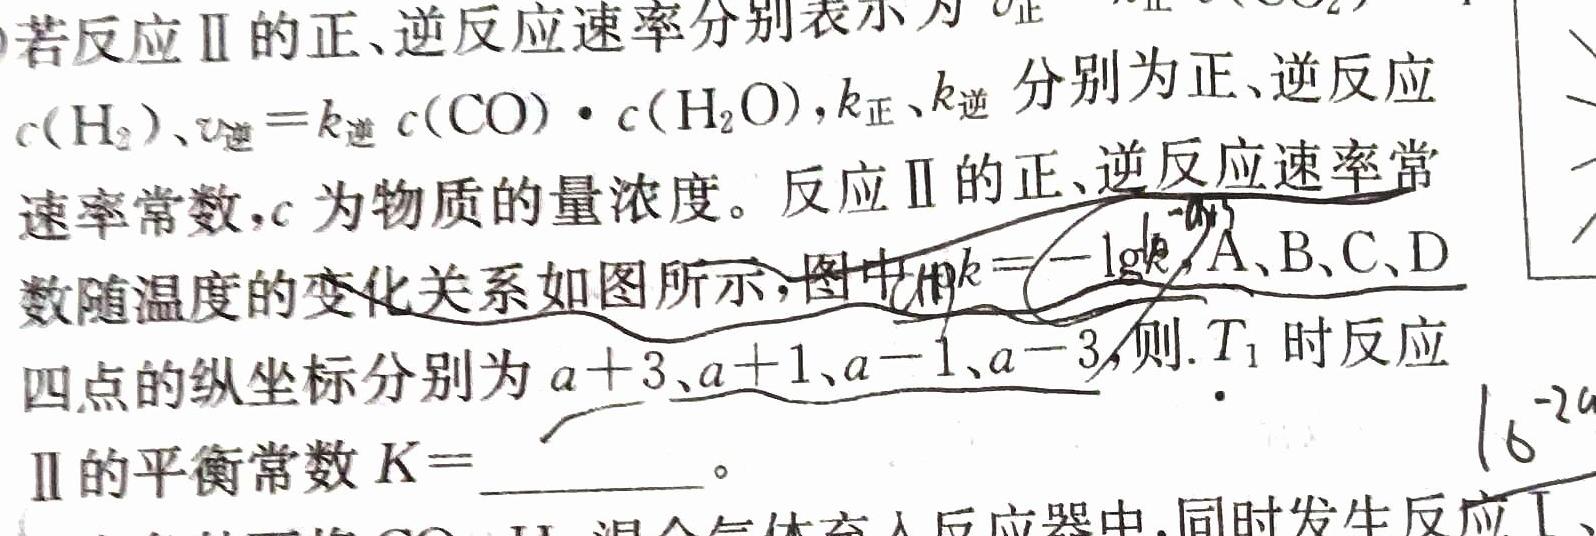 【热荐】顶兴学校高三年级秋季学期第四次月考(243346Z)化学